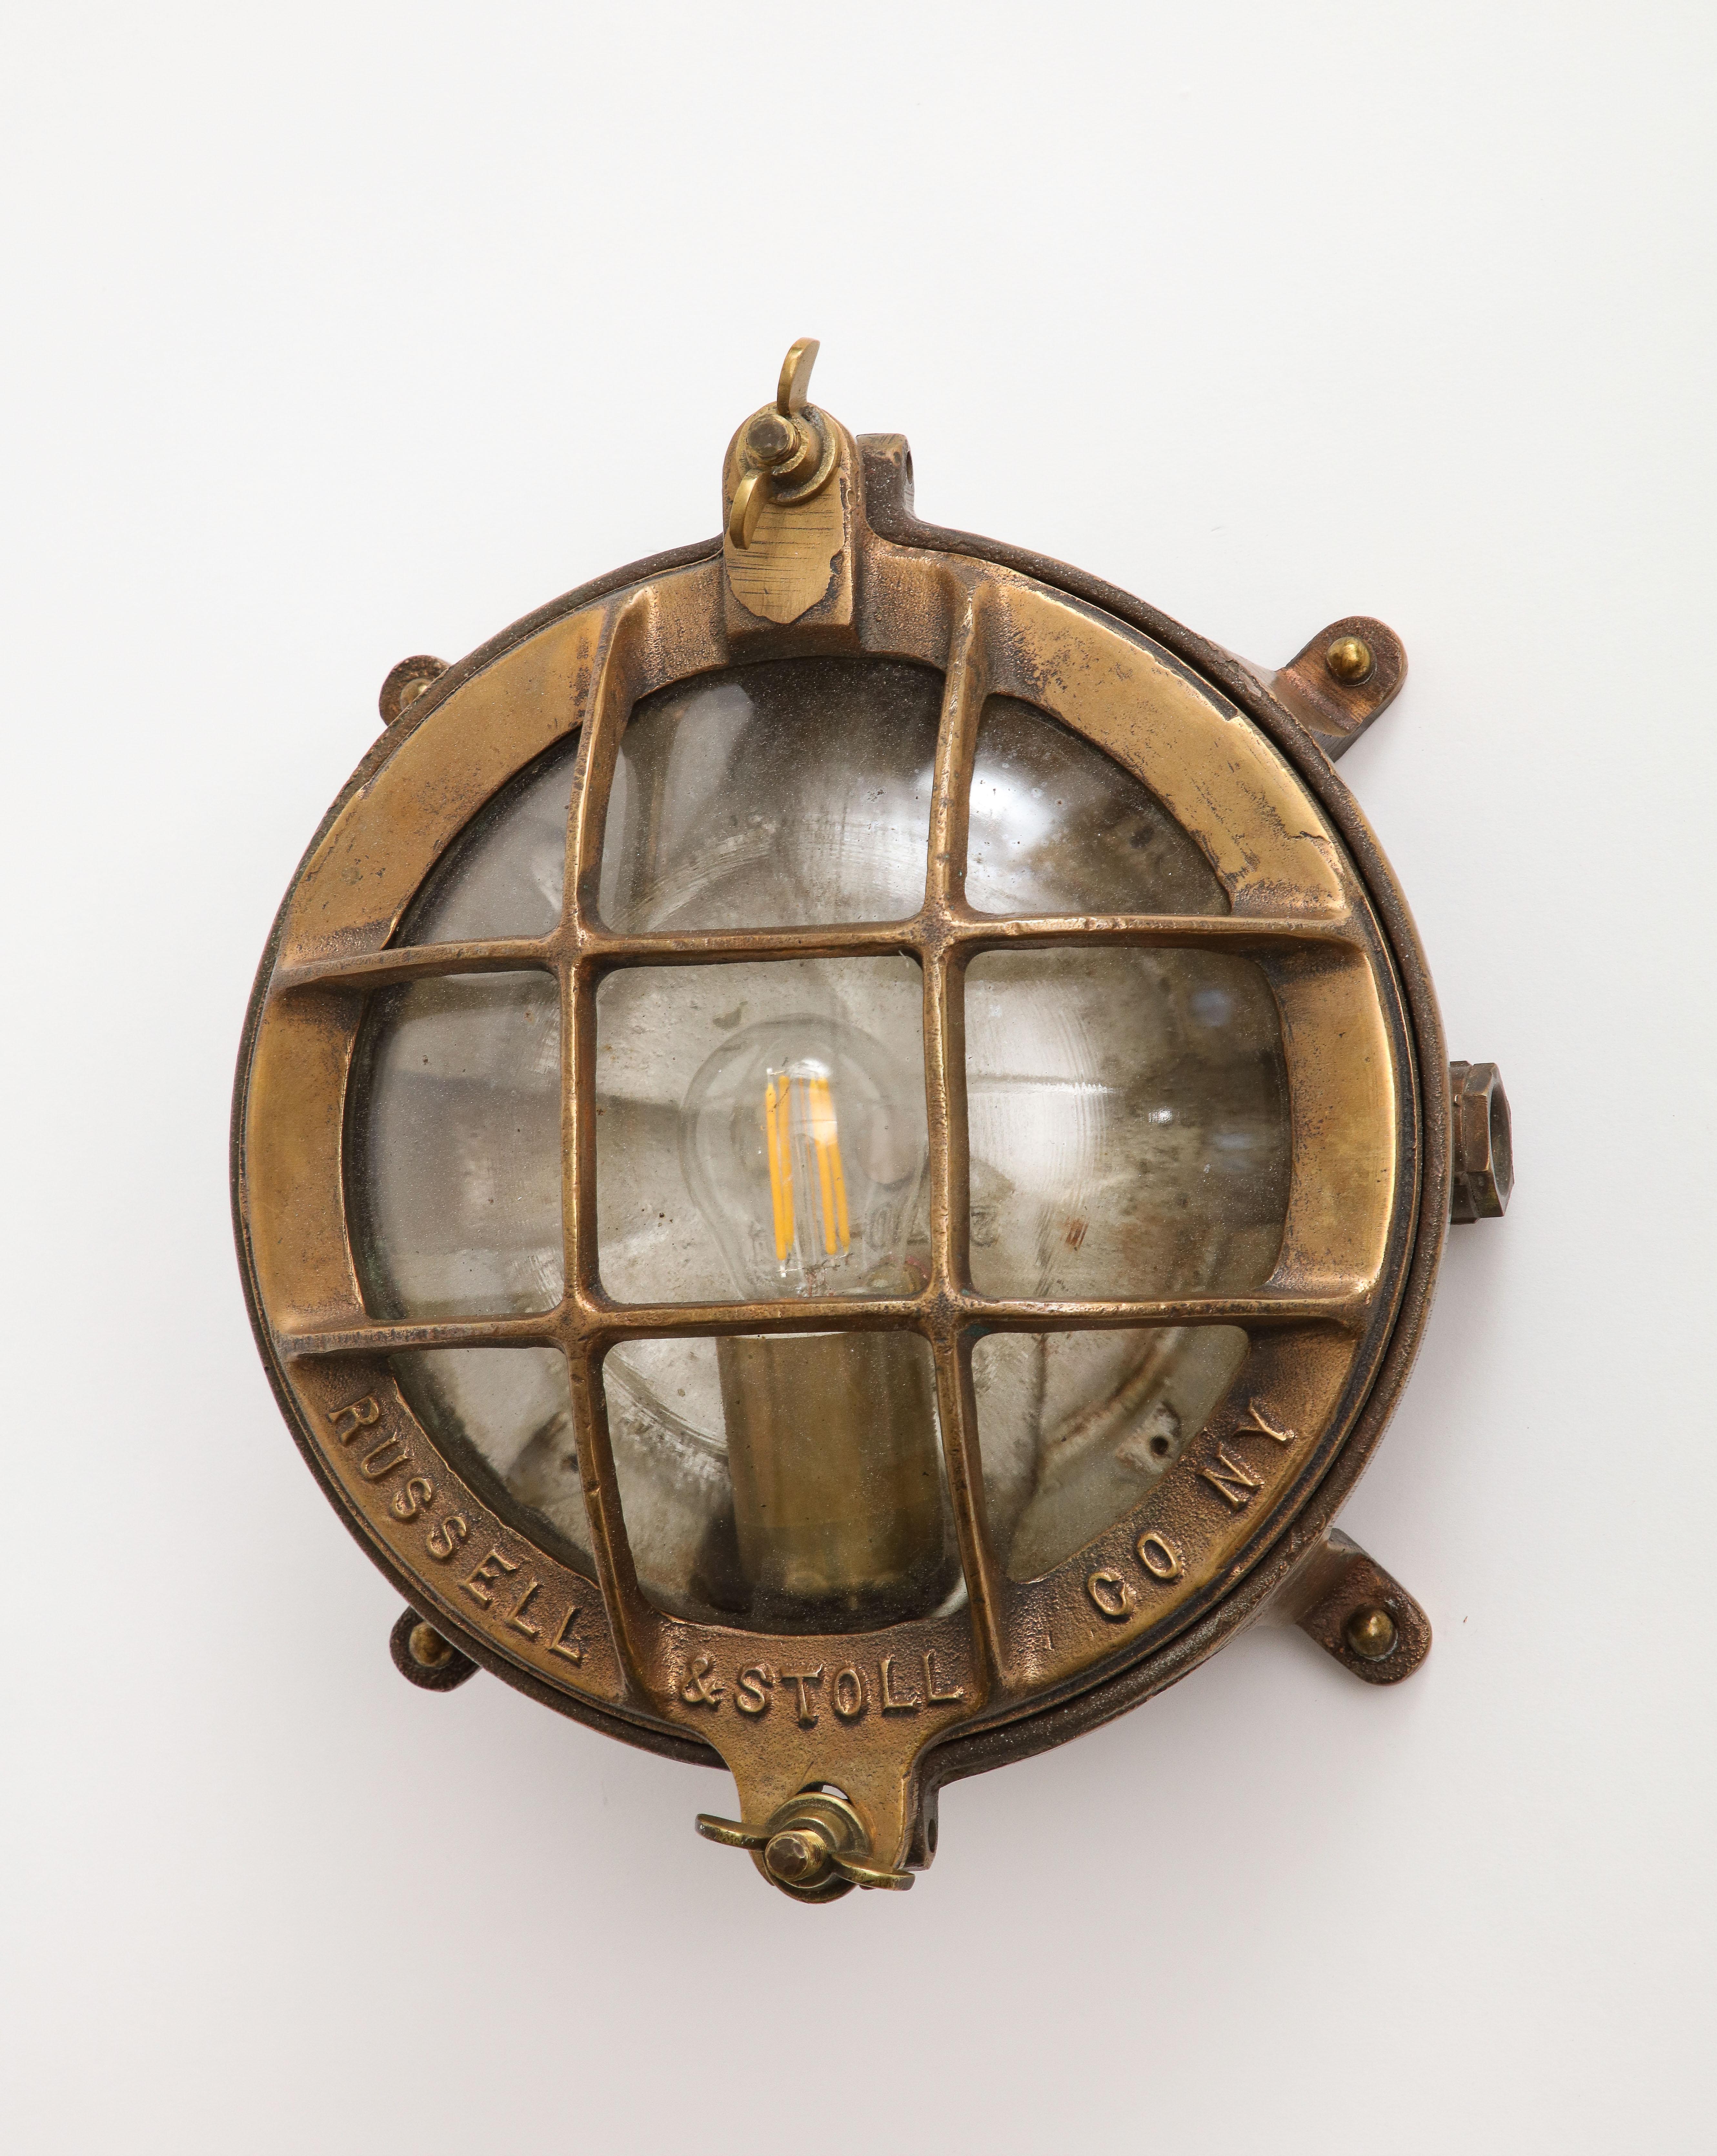 Paire de lampes en bronze coulé de la société Russell & Stoll, datant du début du 20e siècle. Elles peuvent être fixées au mur comme une applique ou être encastrées au plafond. Les lampes reposent sur une base à pied, le dôme en verre étant protégé